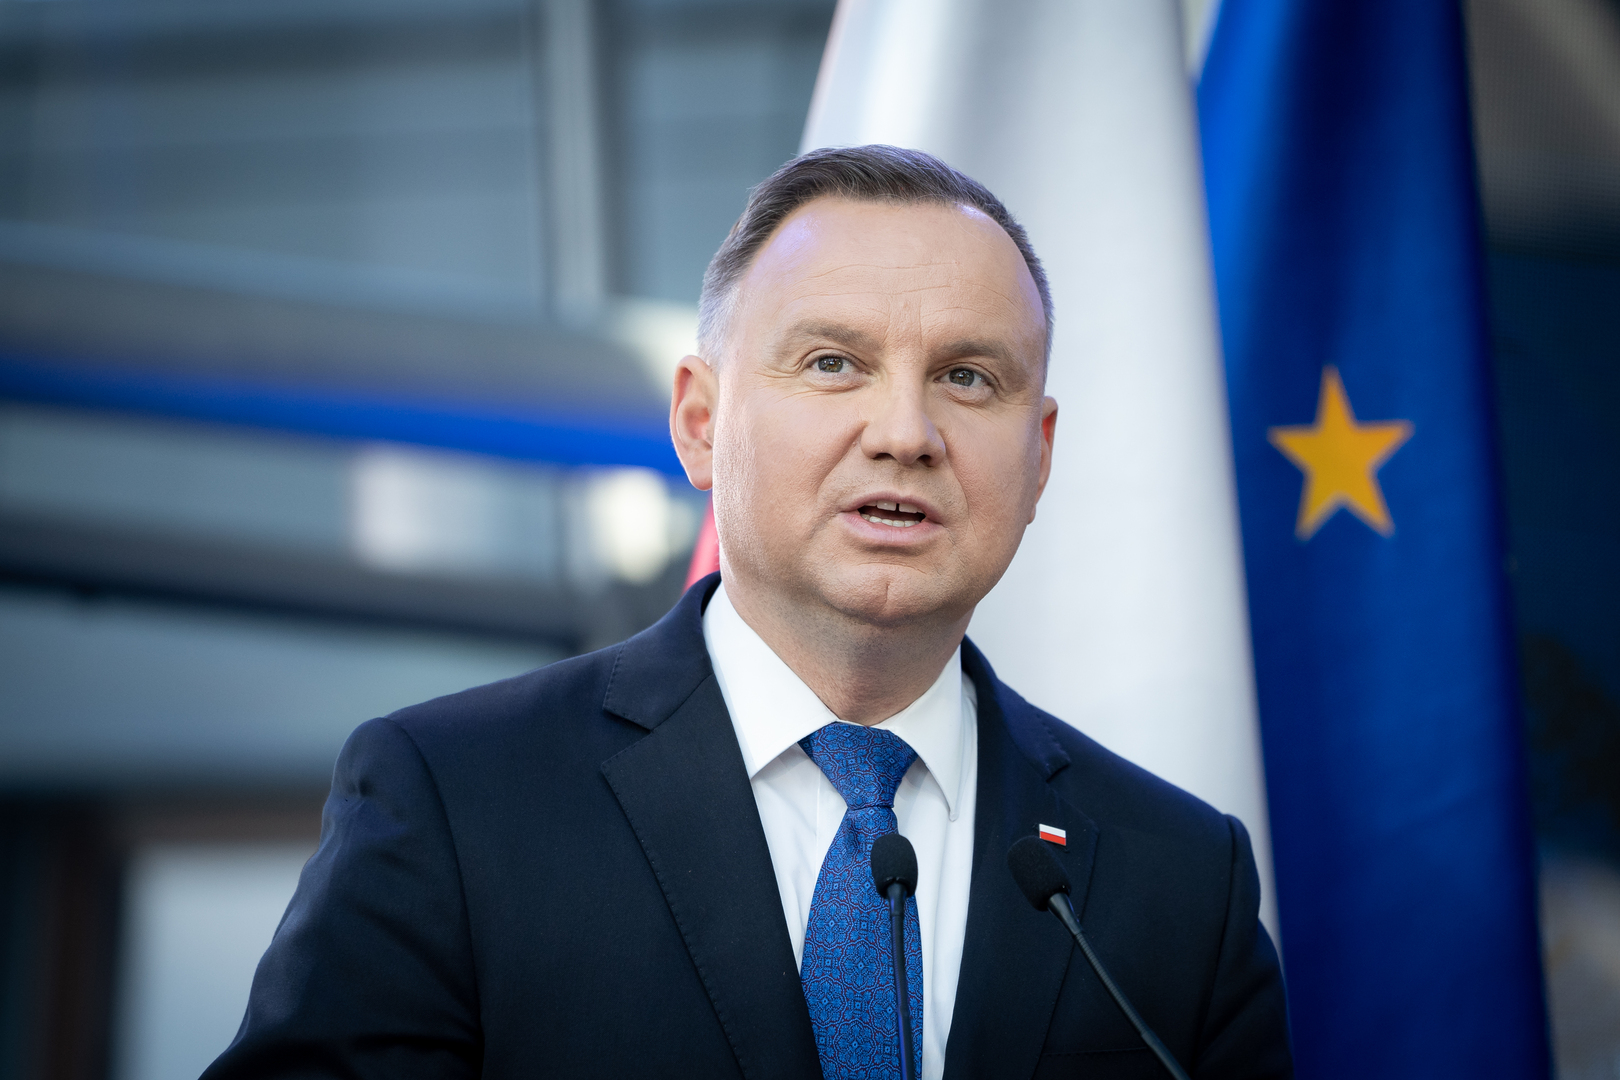 الرئيس البولندي يطالب الدول الأوروبية بتزويد بلاده بأسلحة مستعملة لتجديد مخزونها بعد مساعدة أوكرانيا